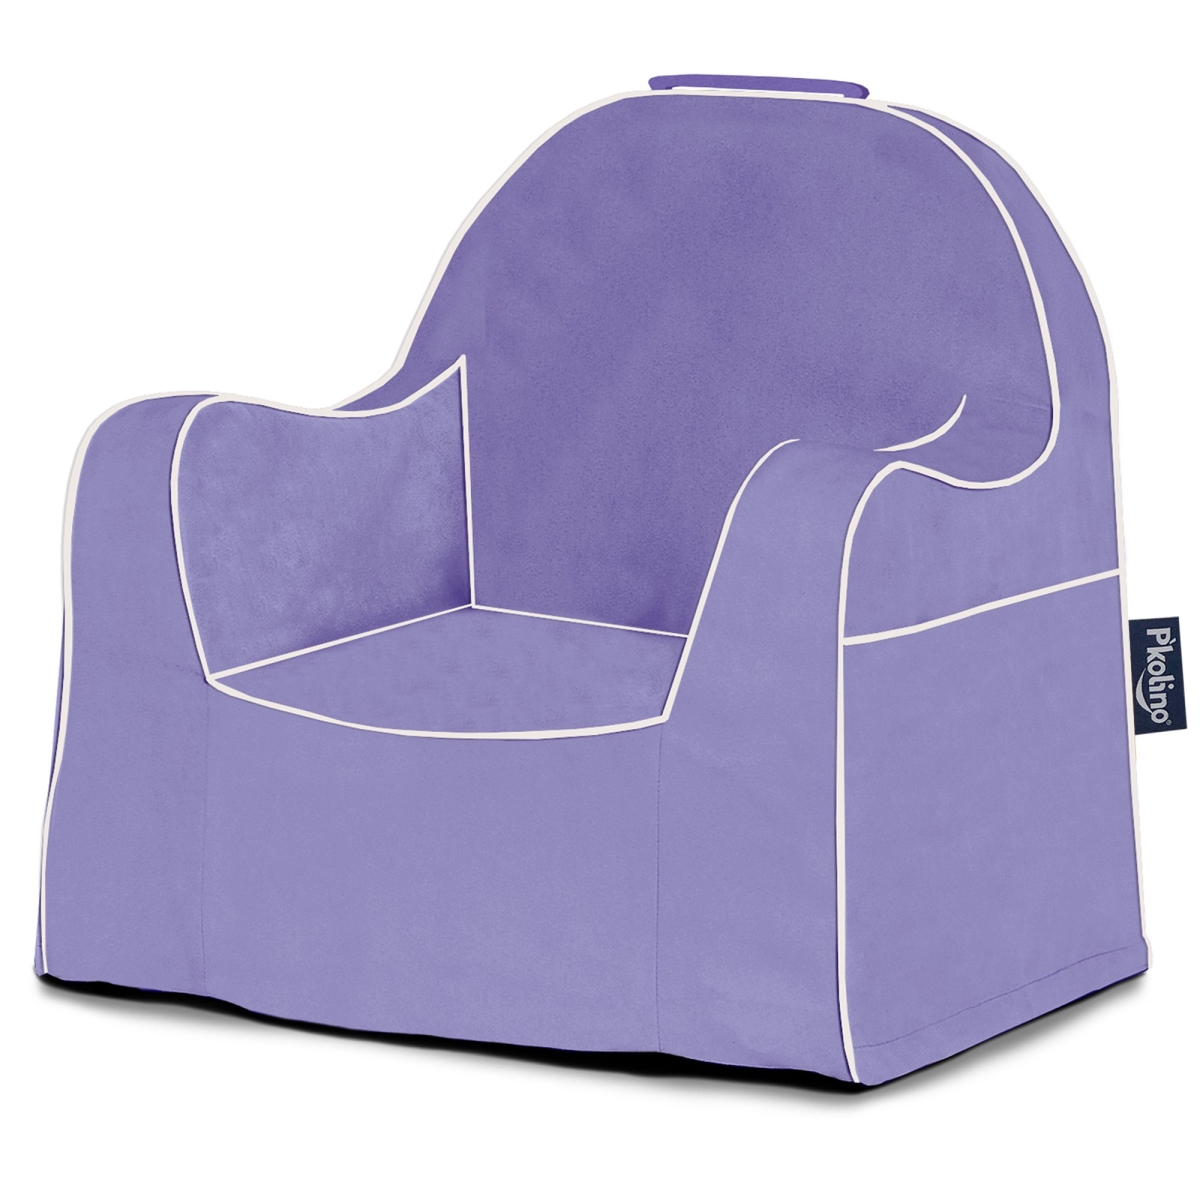 PKolino PKFFLRSLPR Little Reader Chair - Light Purple with White Piping - 17.75 x 16 x 18 in.